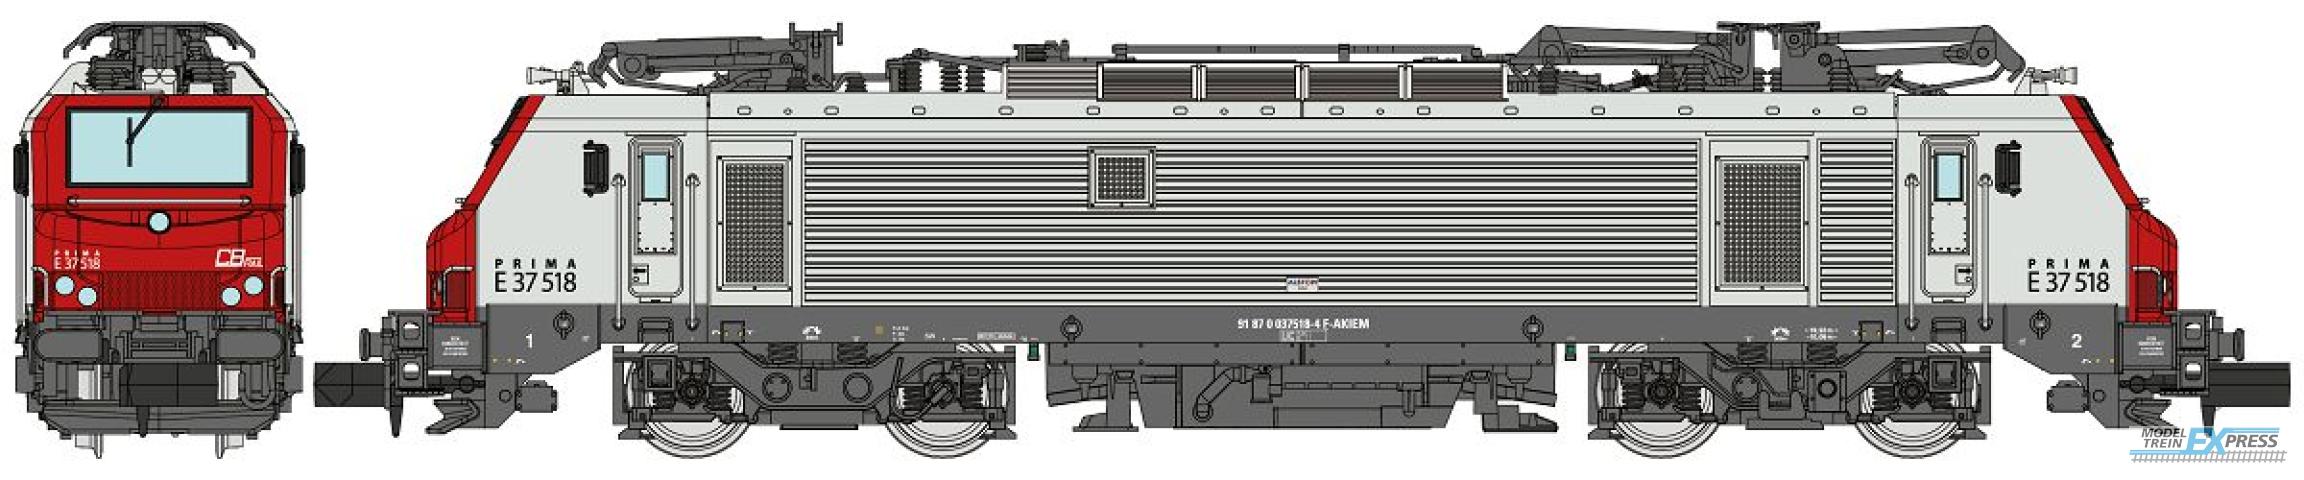 REE models NW-301 Electric locomotive Prima E 37518 CB RailEp.VI